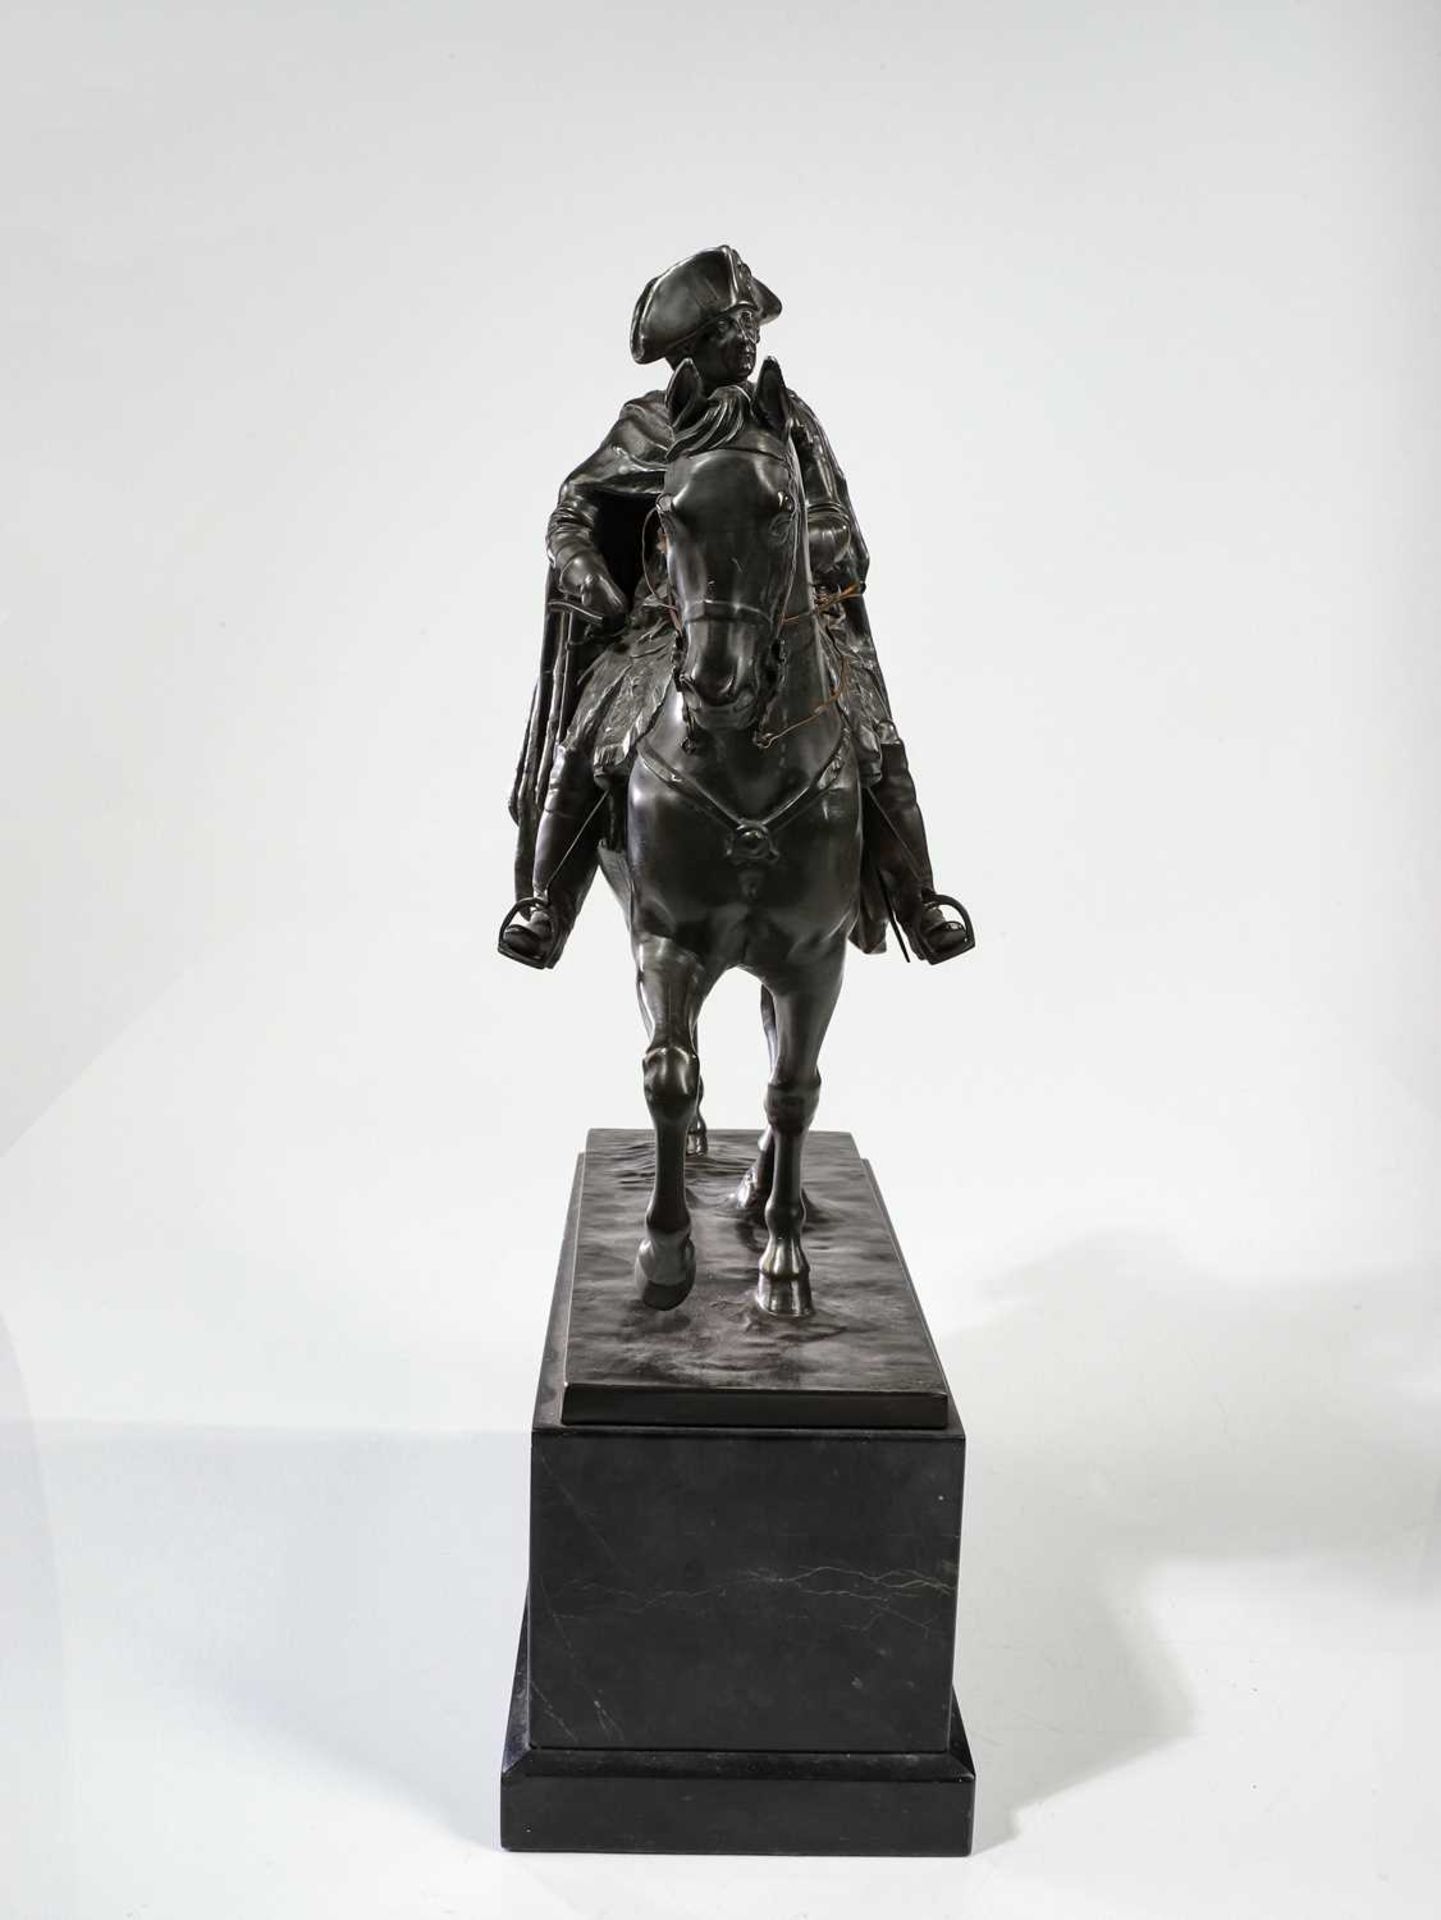 Skulptur von "Friedrich der Große" - Image 2 of 27